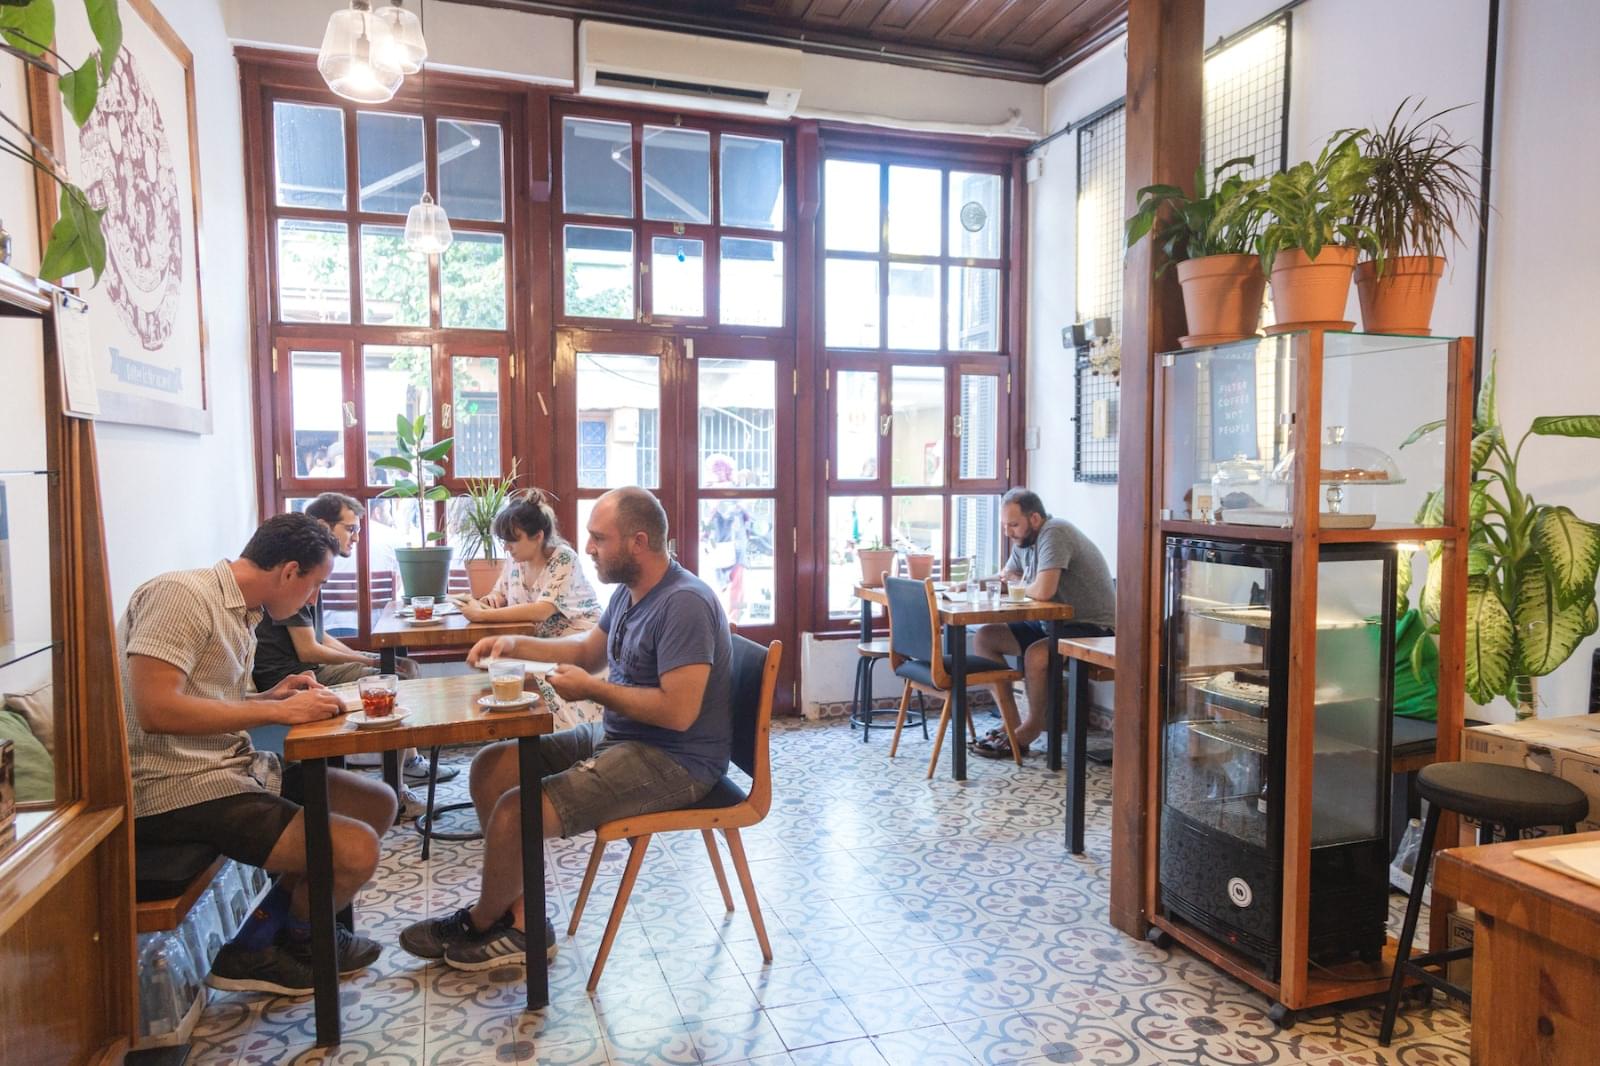 Cafes Near Hagia Sophia